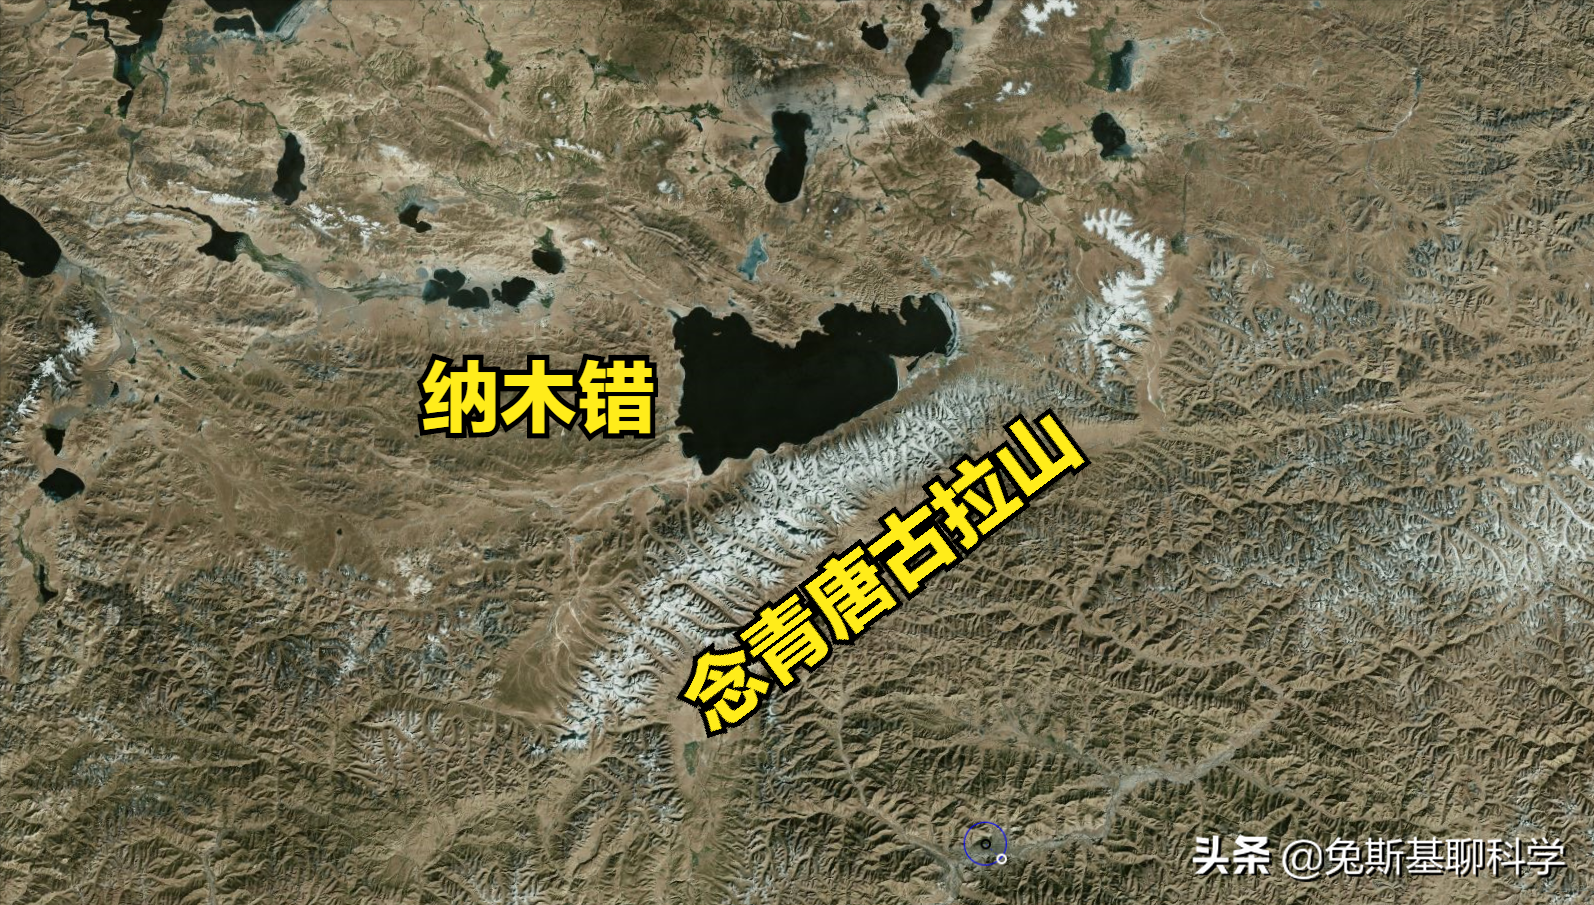 中国湖泊面积十大排名，江苏和西藏各占两个，排行榜第10名在新疆